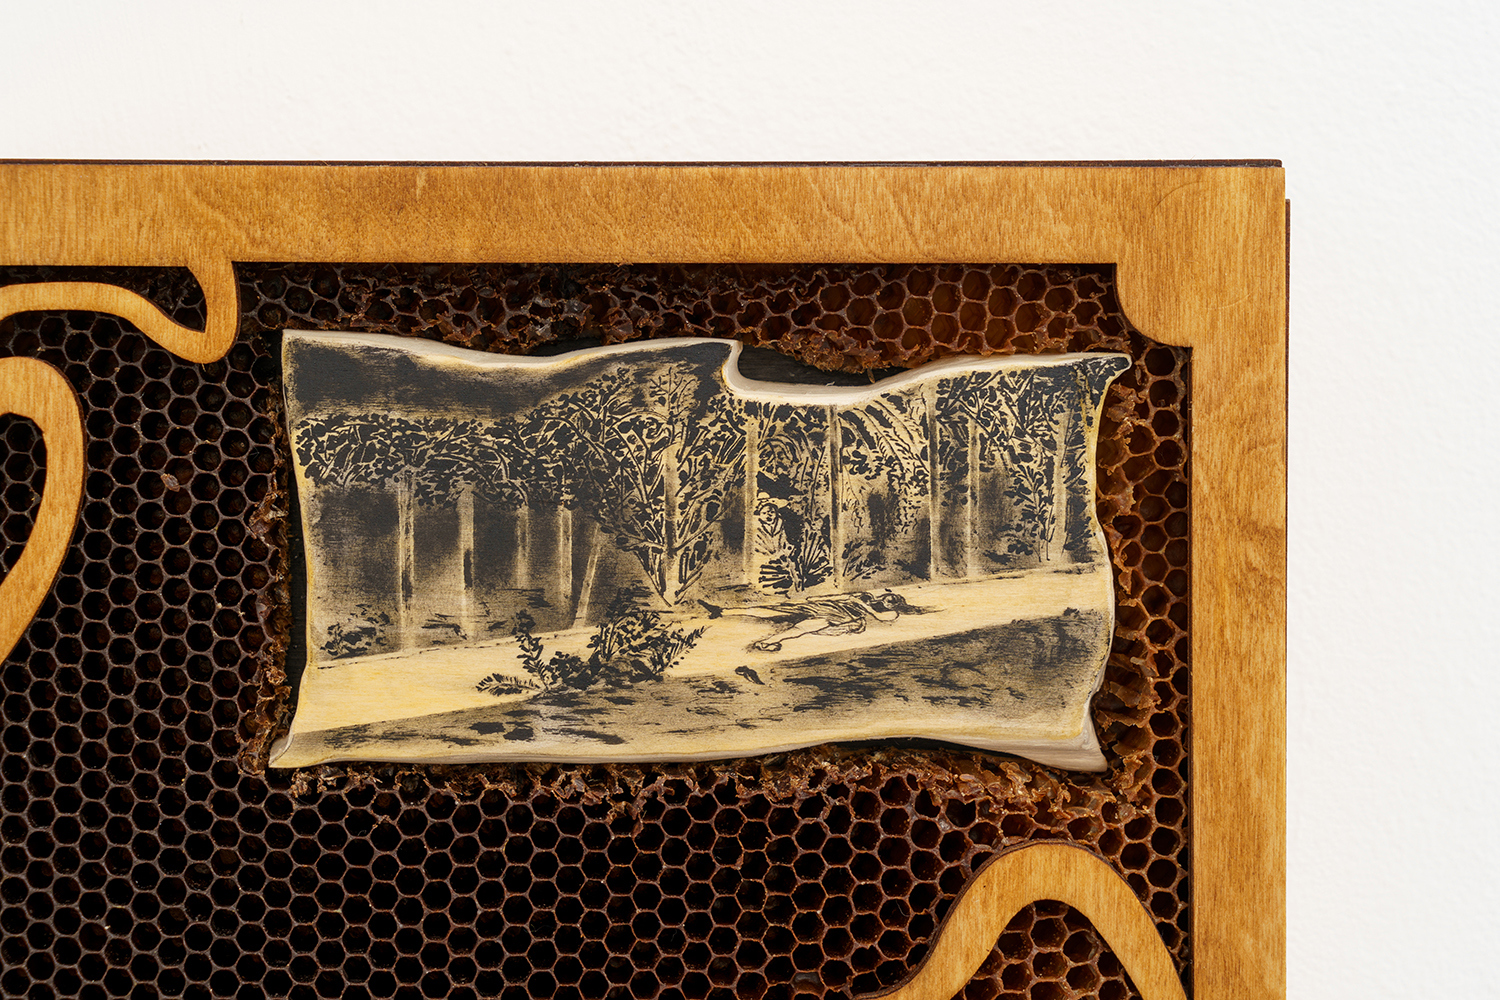 ‘Wild Rumor’, 2022, ink, linden, plywood, honeycombs, 38x25x6 cm (Details)